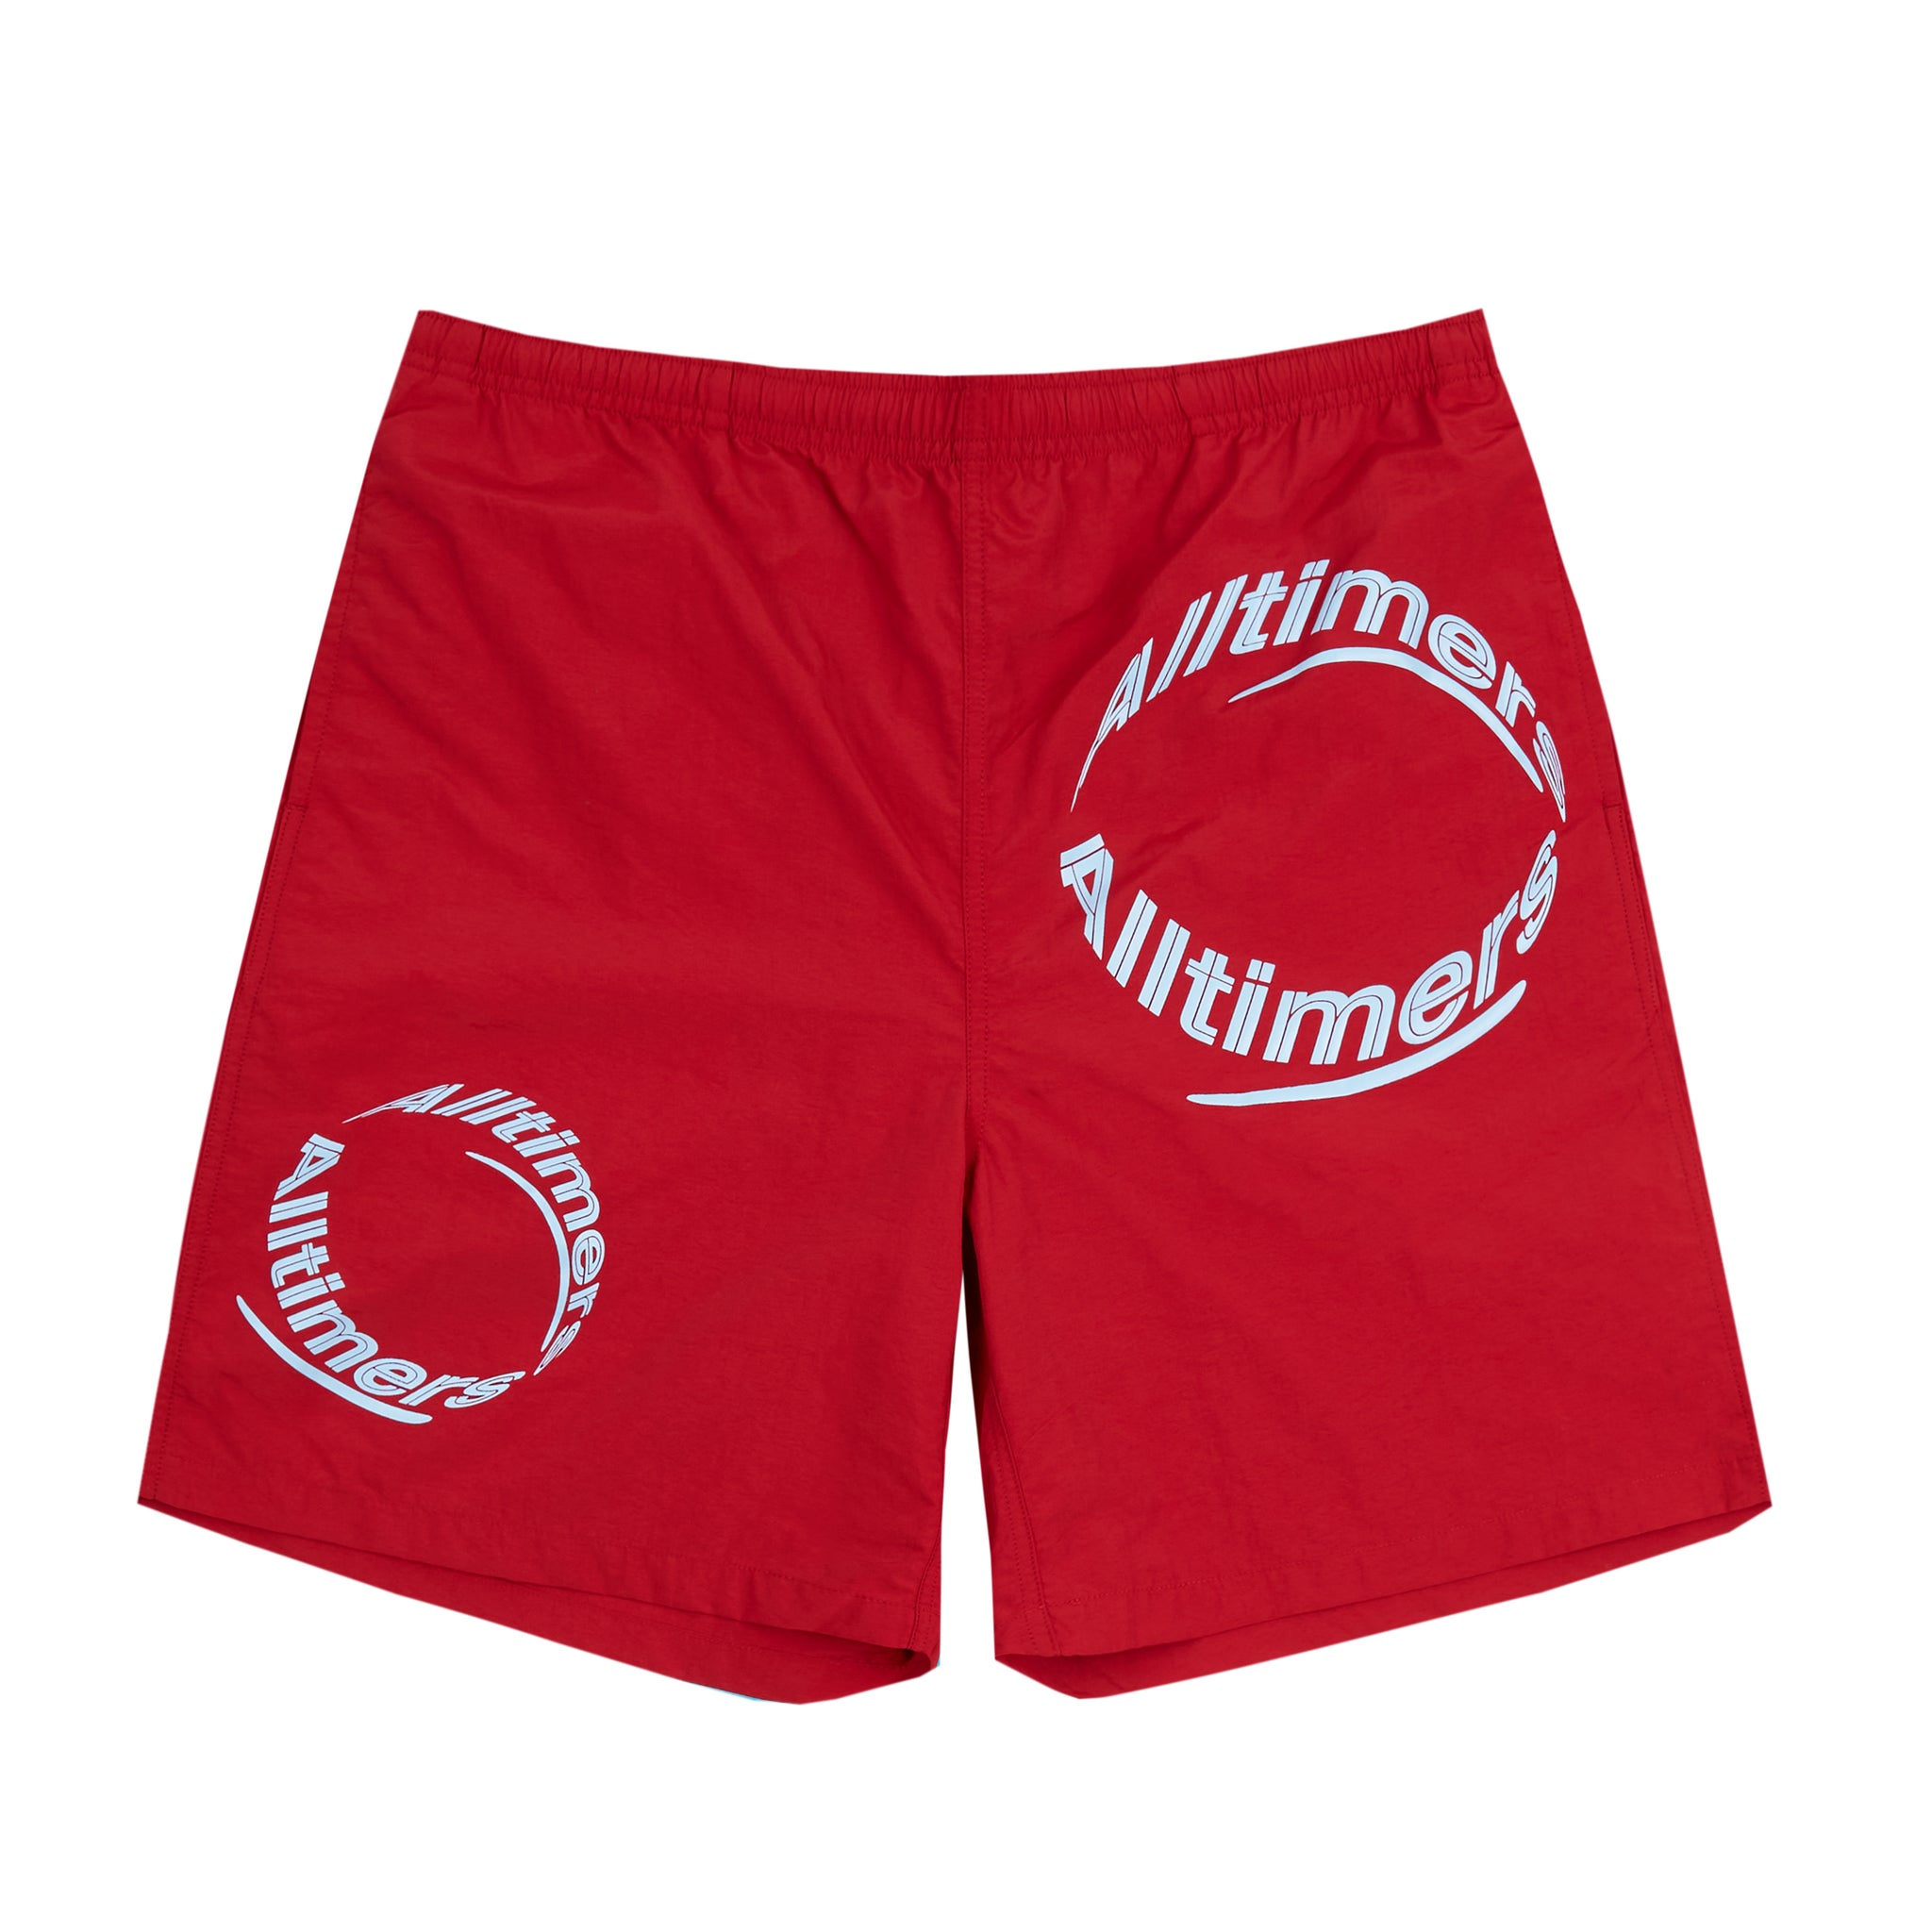 ALLTIMERS  - Draino Swim Shorts "Dark Red"